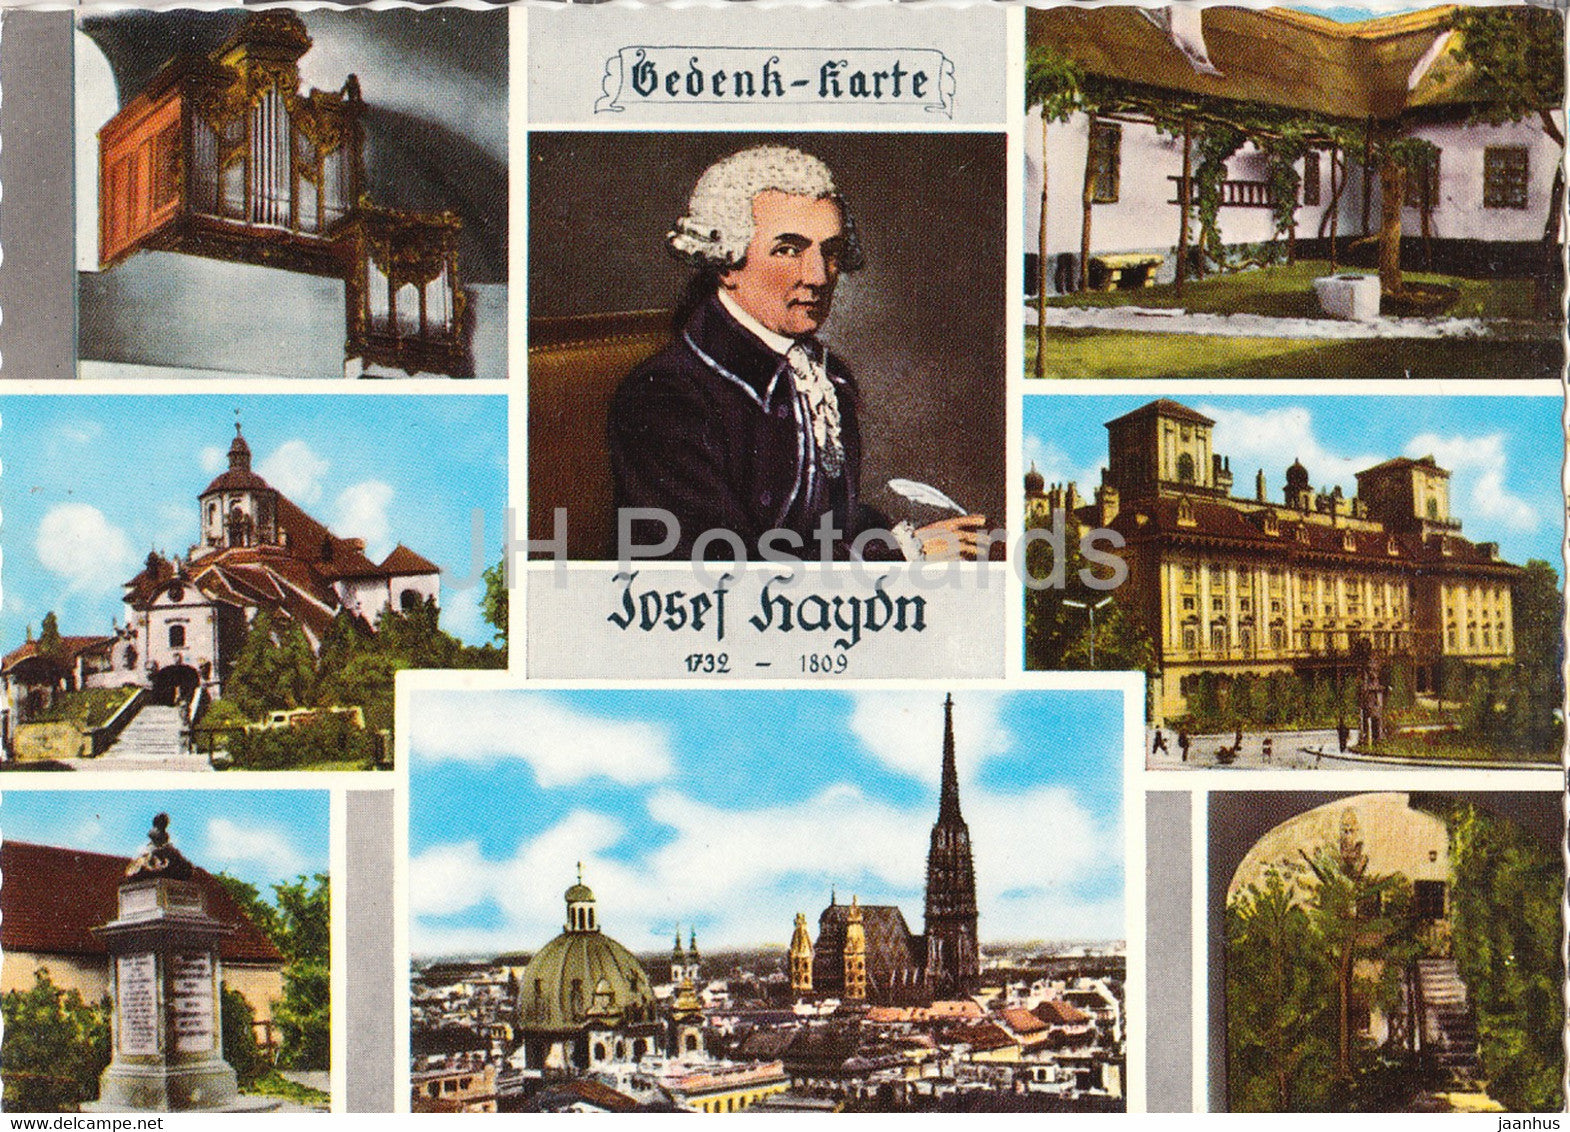 Josef Haydn - Haydn Orgel - Bergkirche - Eisenstadt - Geburtshaus - composer - multiview - Austria - unused - JH Postcards